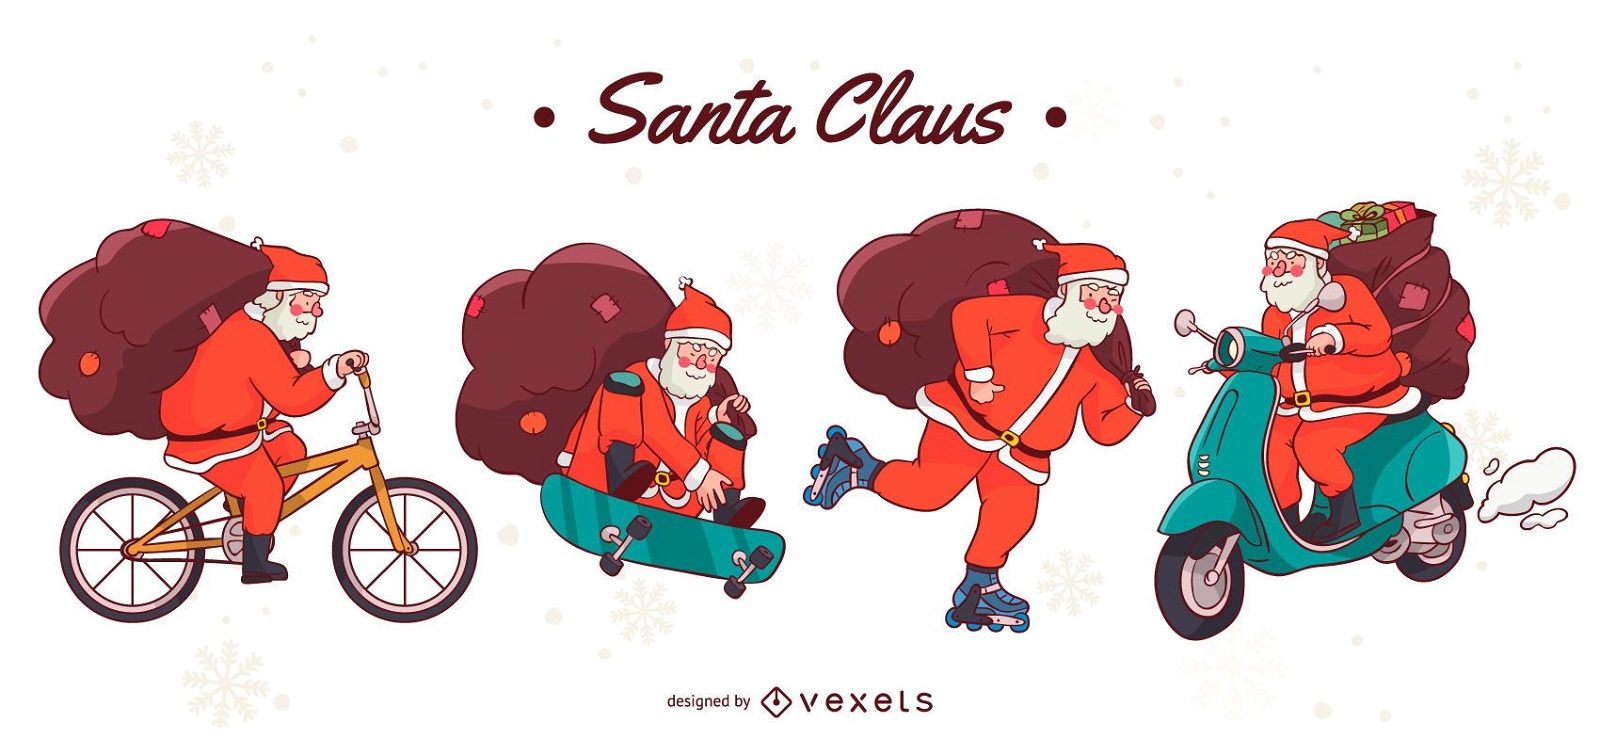 Santa Claus vehicles character set